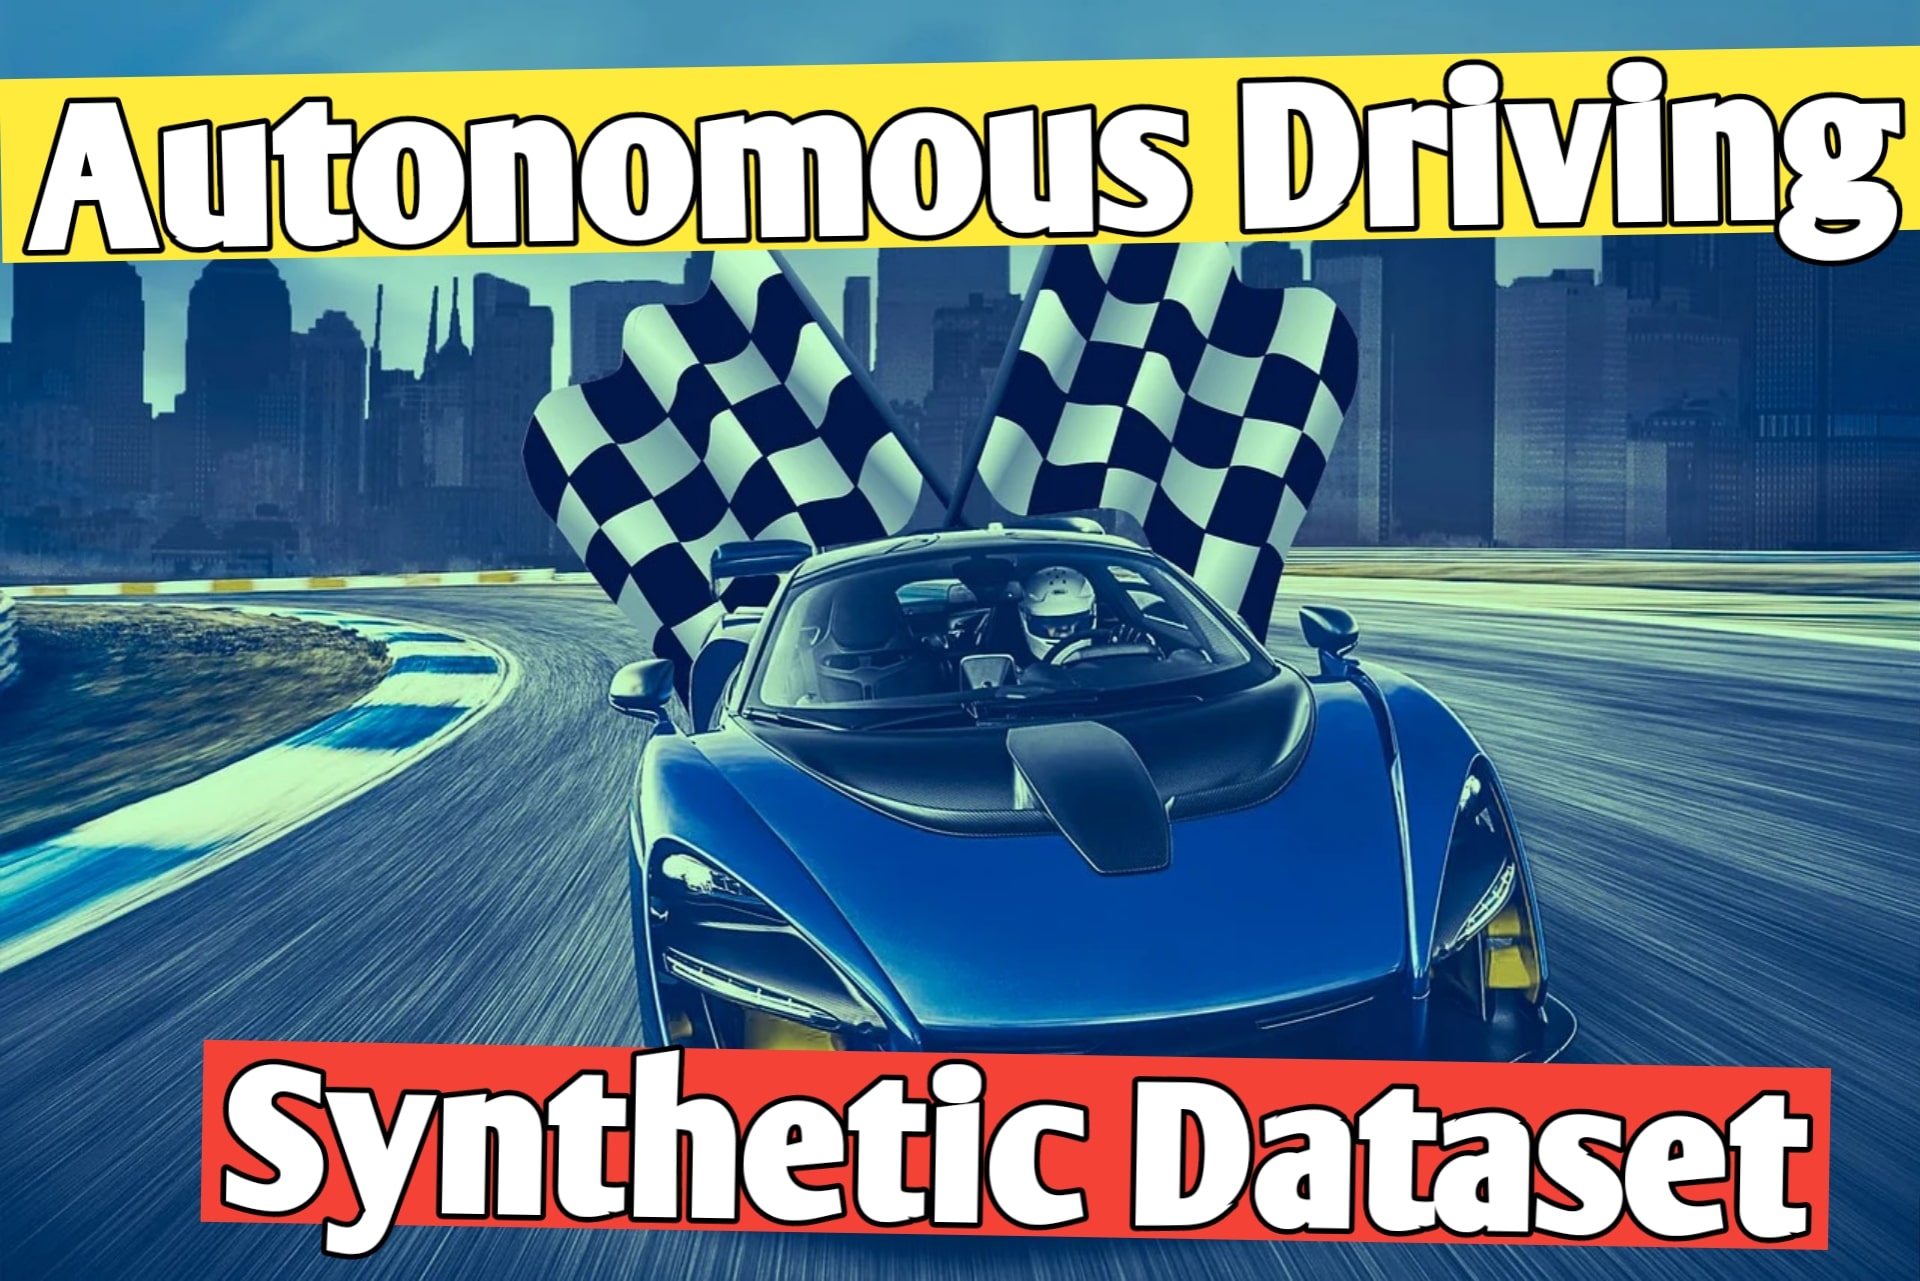 Synthetic Data Set for Autonomous Driving